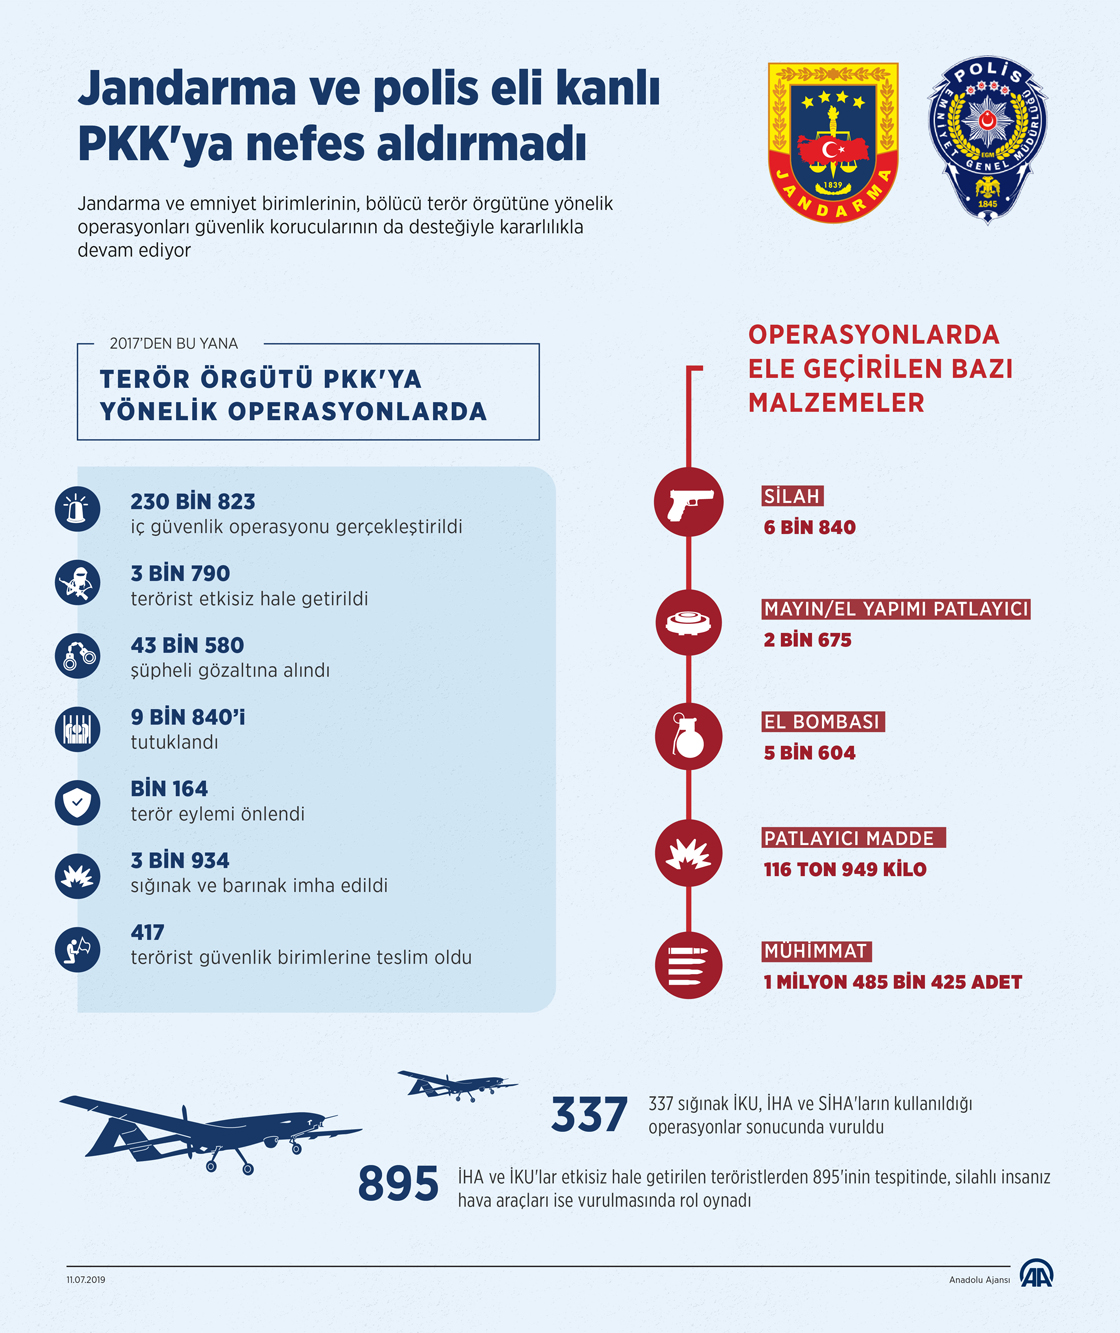 Jandarma ve polis eli kanlı PKK'ya nefes aldırmadı